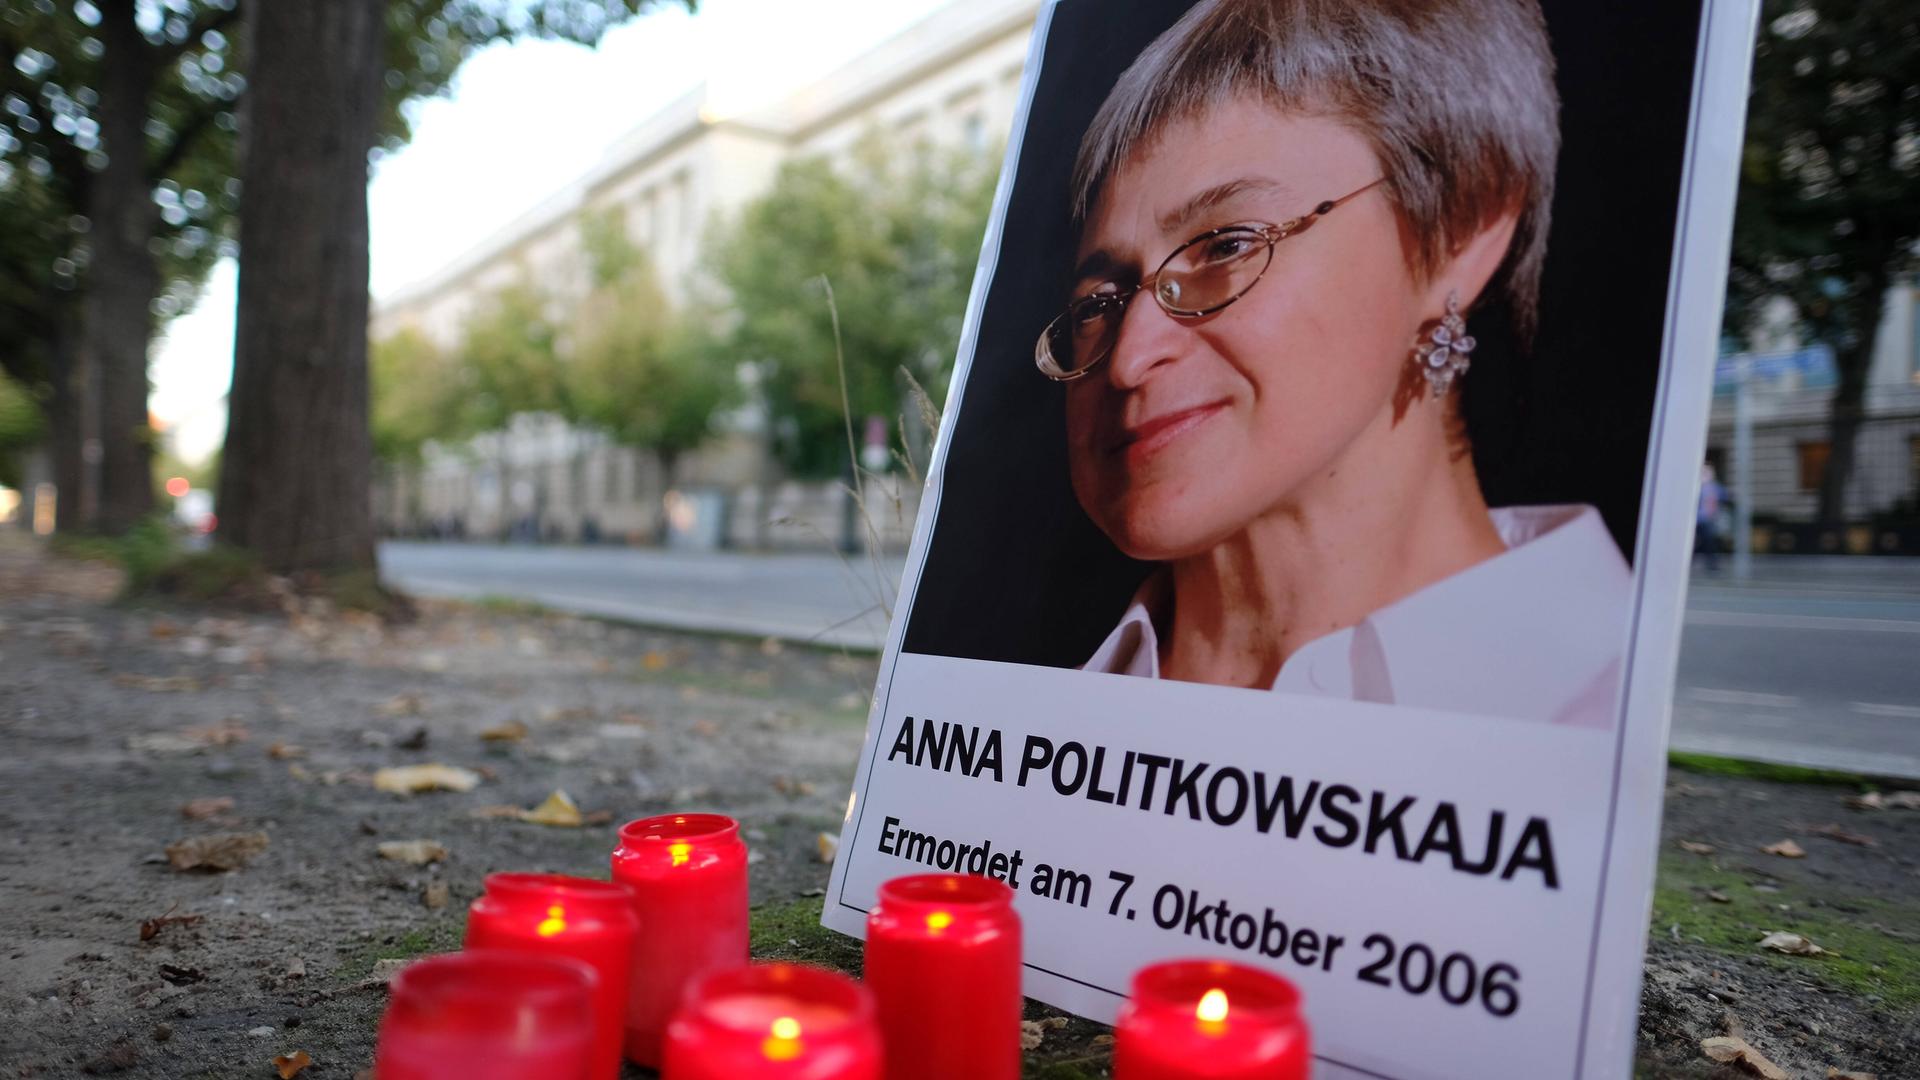 Amnesty International und Reporter ohne Grenzen erinnern am 7. Oktober mit einer Mahnwache vor der Russischen Botschaft an die ermordete Journalistin Anna Politkowskaja. Vor einem Foto von ihr brennen Kerzen.